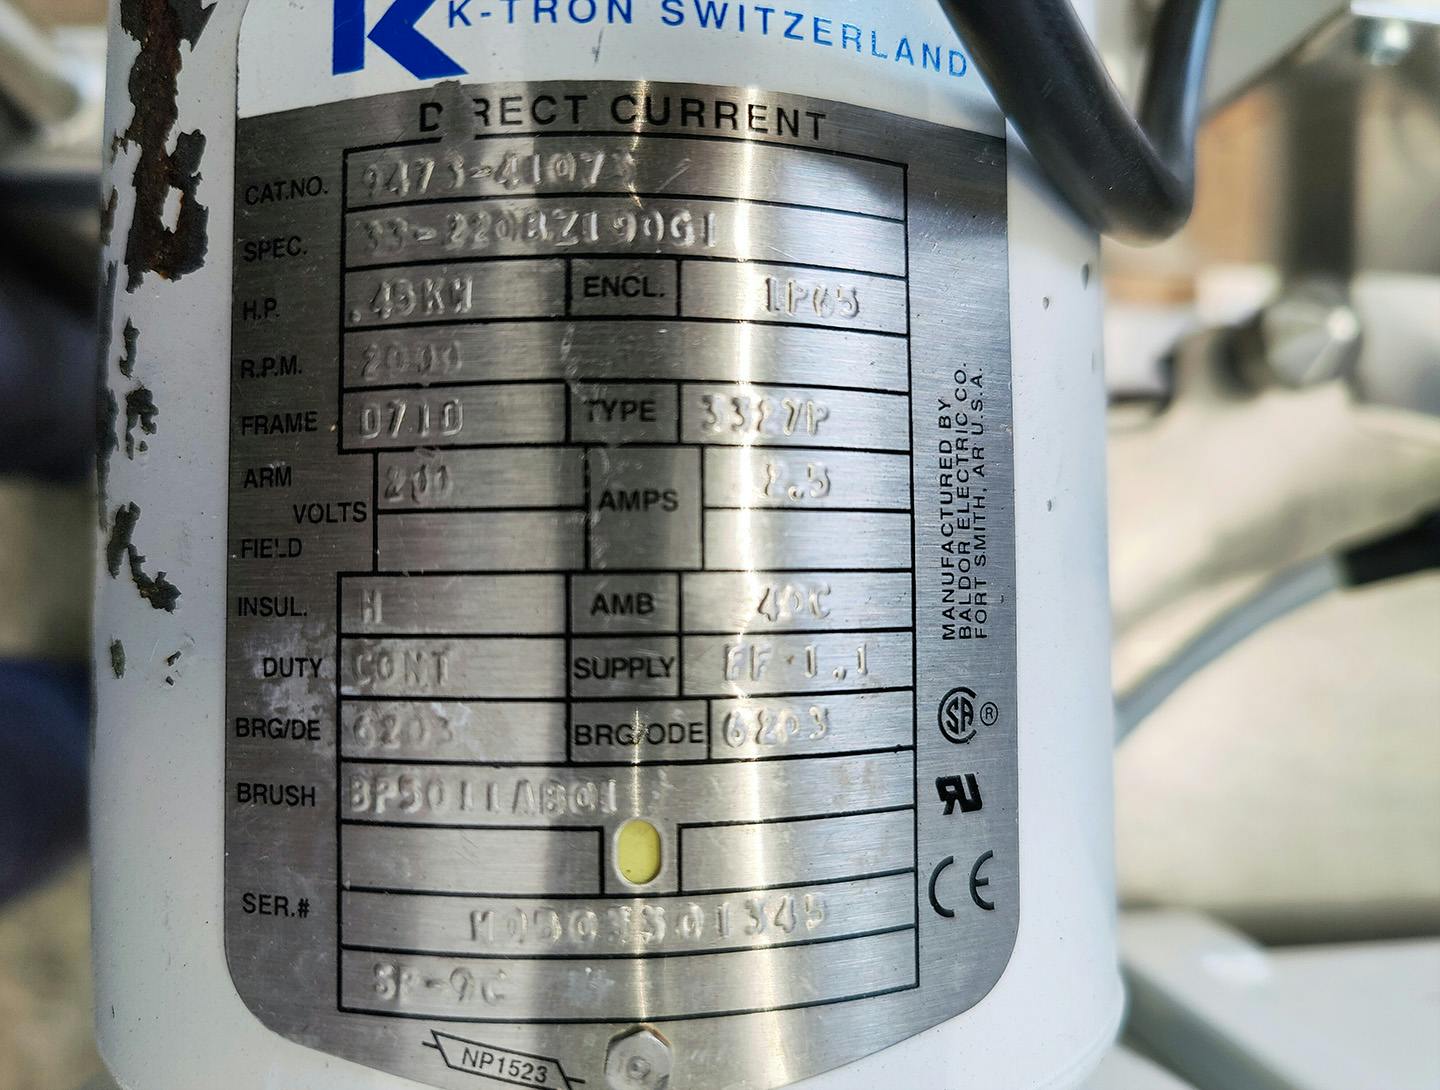 K-tron K2-ML-T35 loss-in-weight feeders - Metering screw - image 9